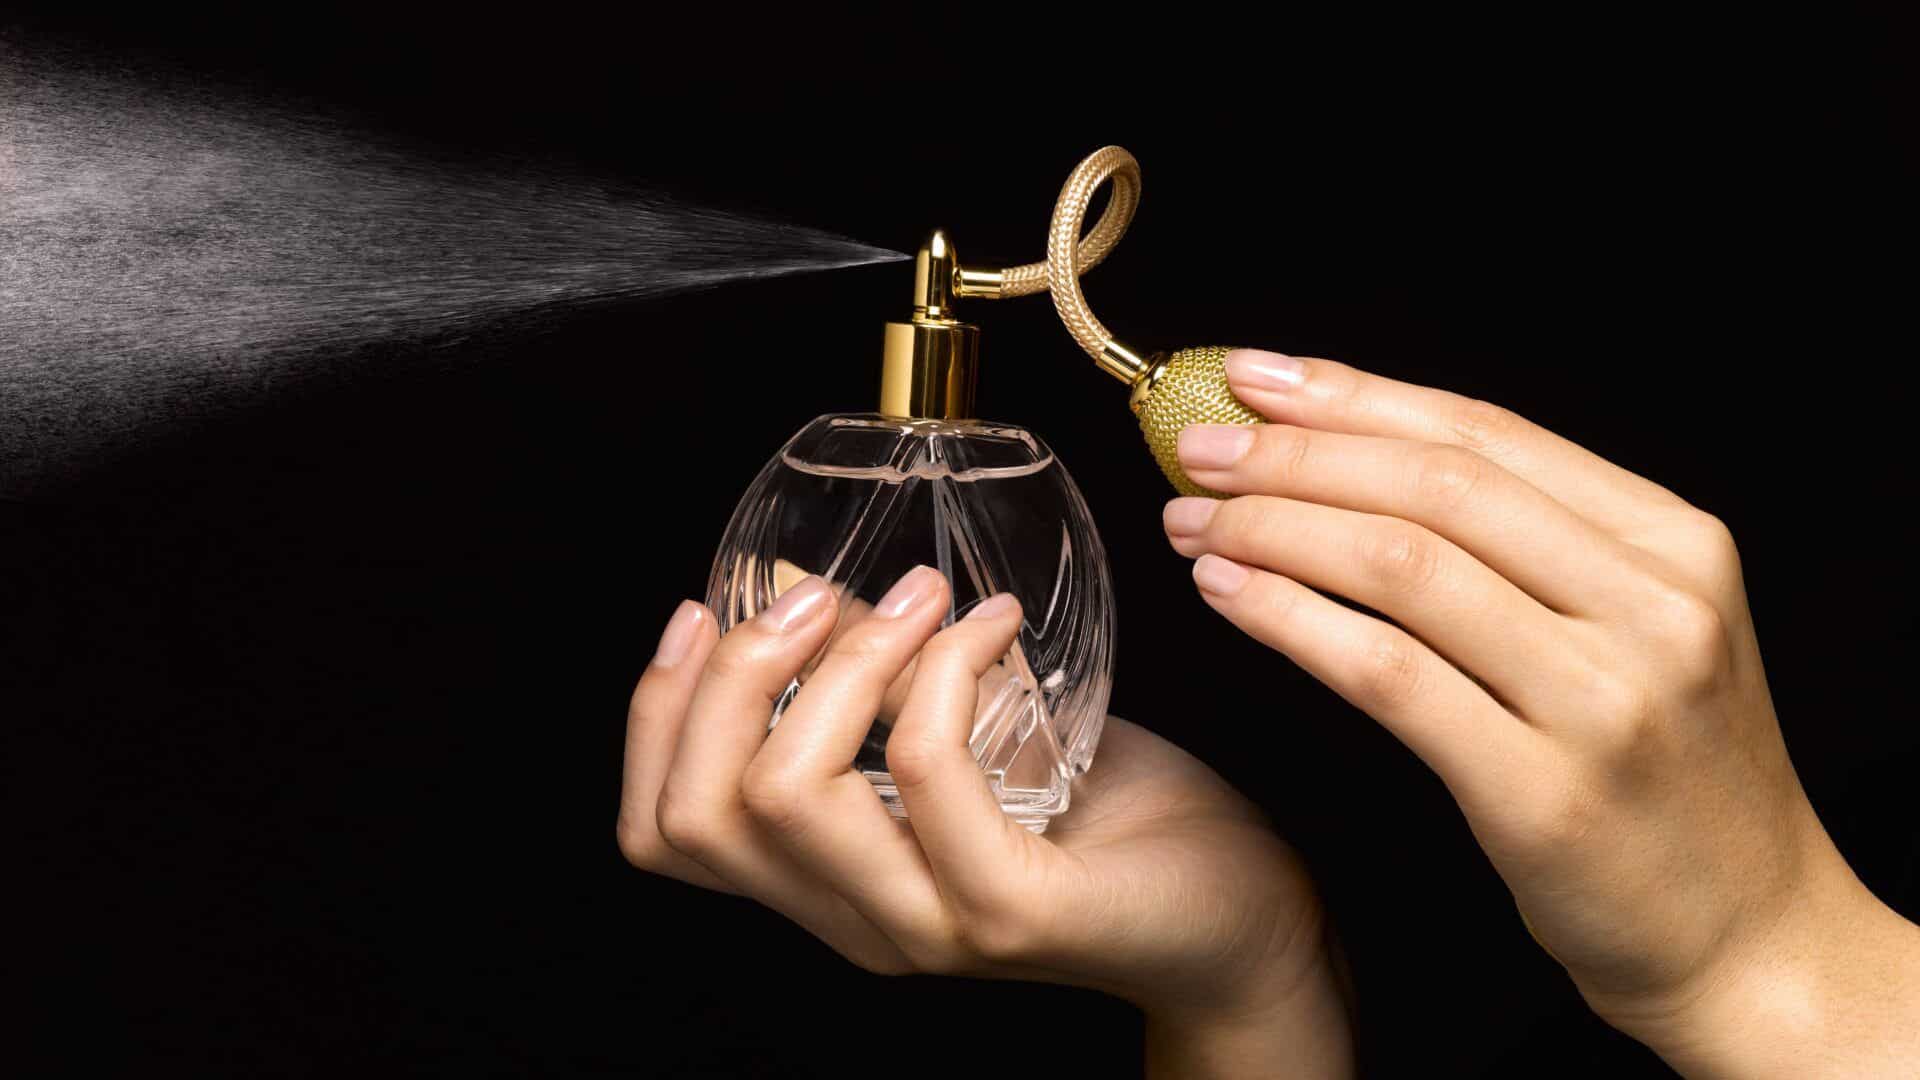 melhores perfumes importados femininos 18 aromas para voce conhecer 12 Vision Art NEWS